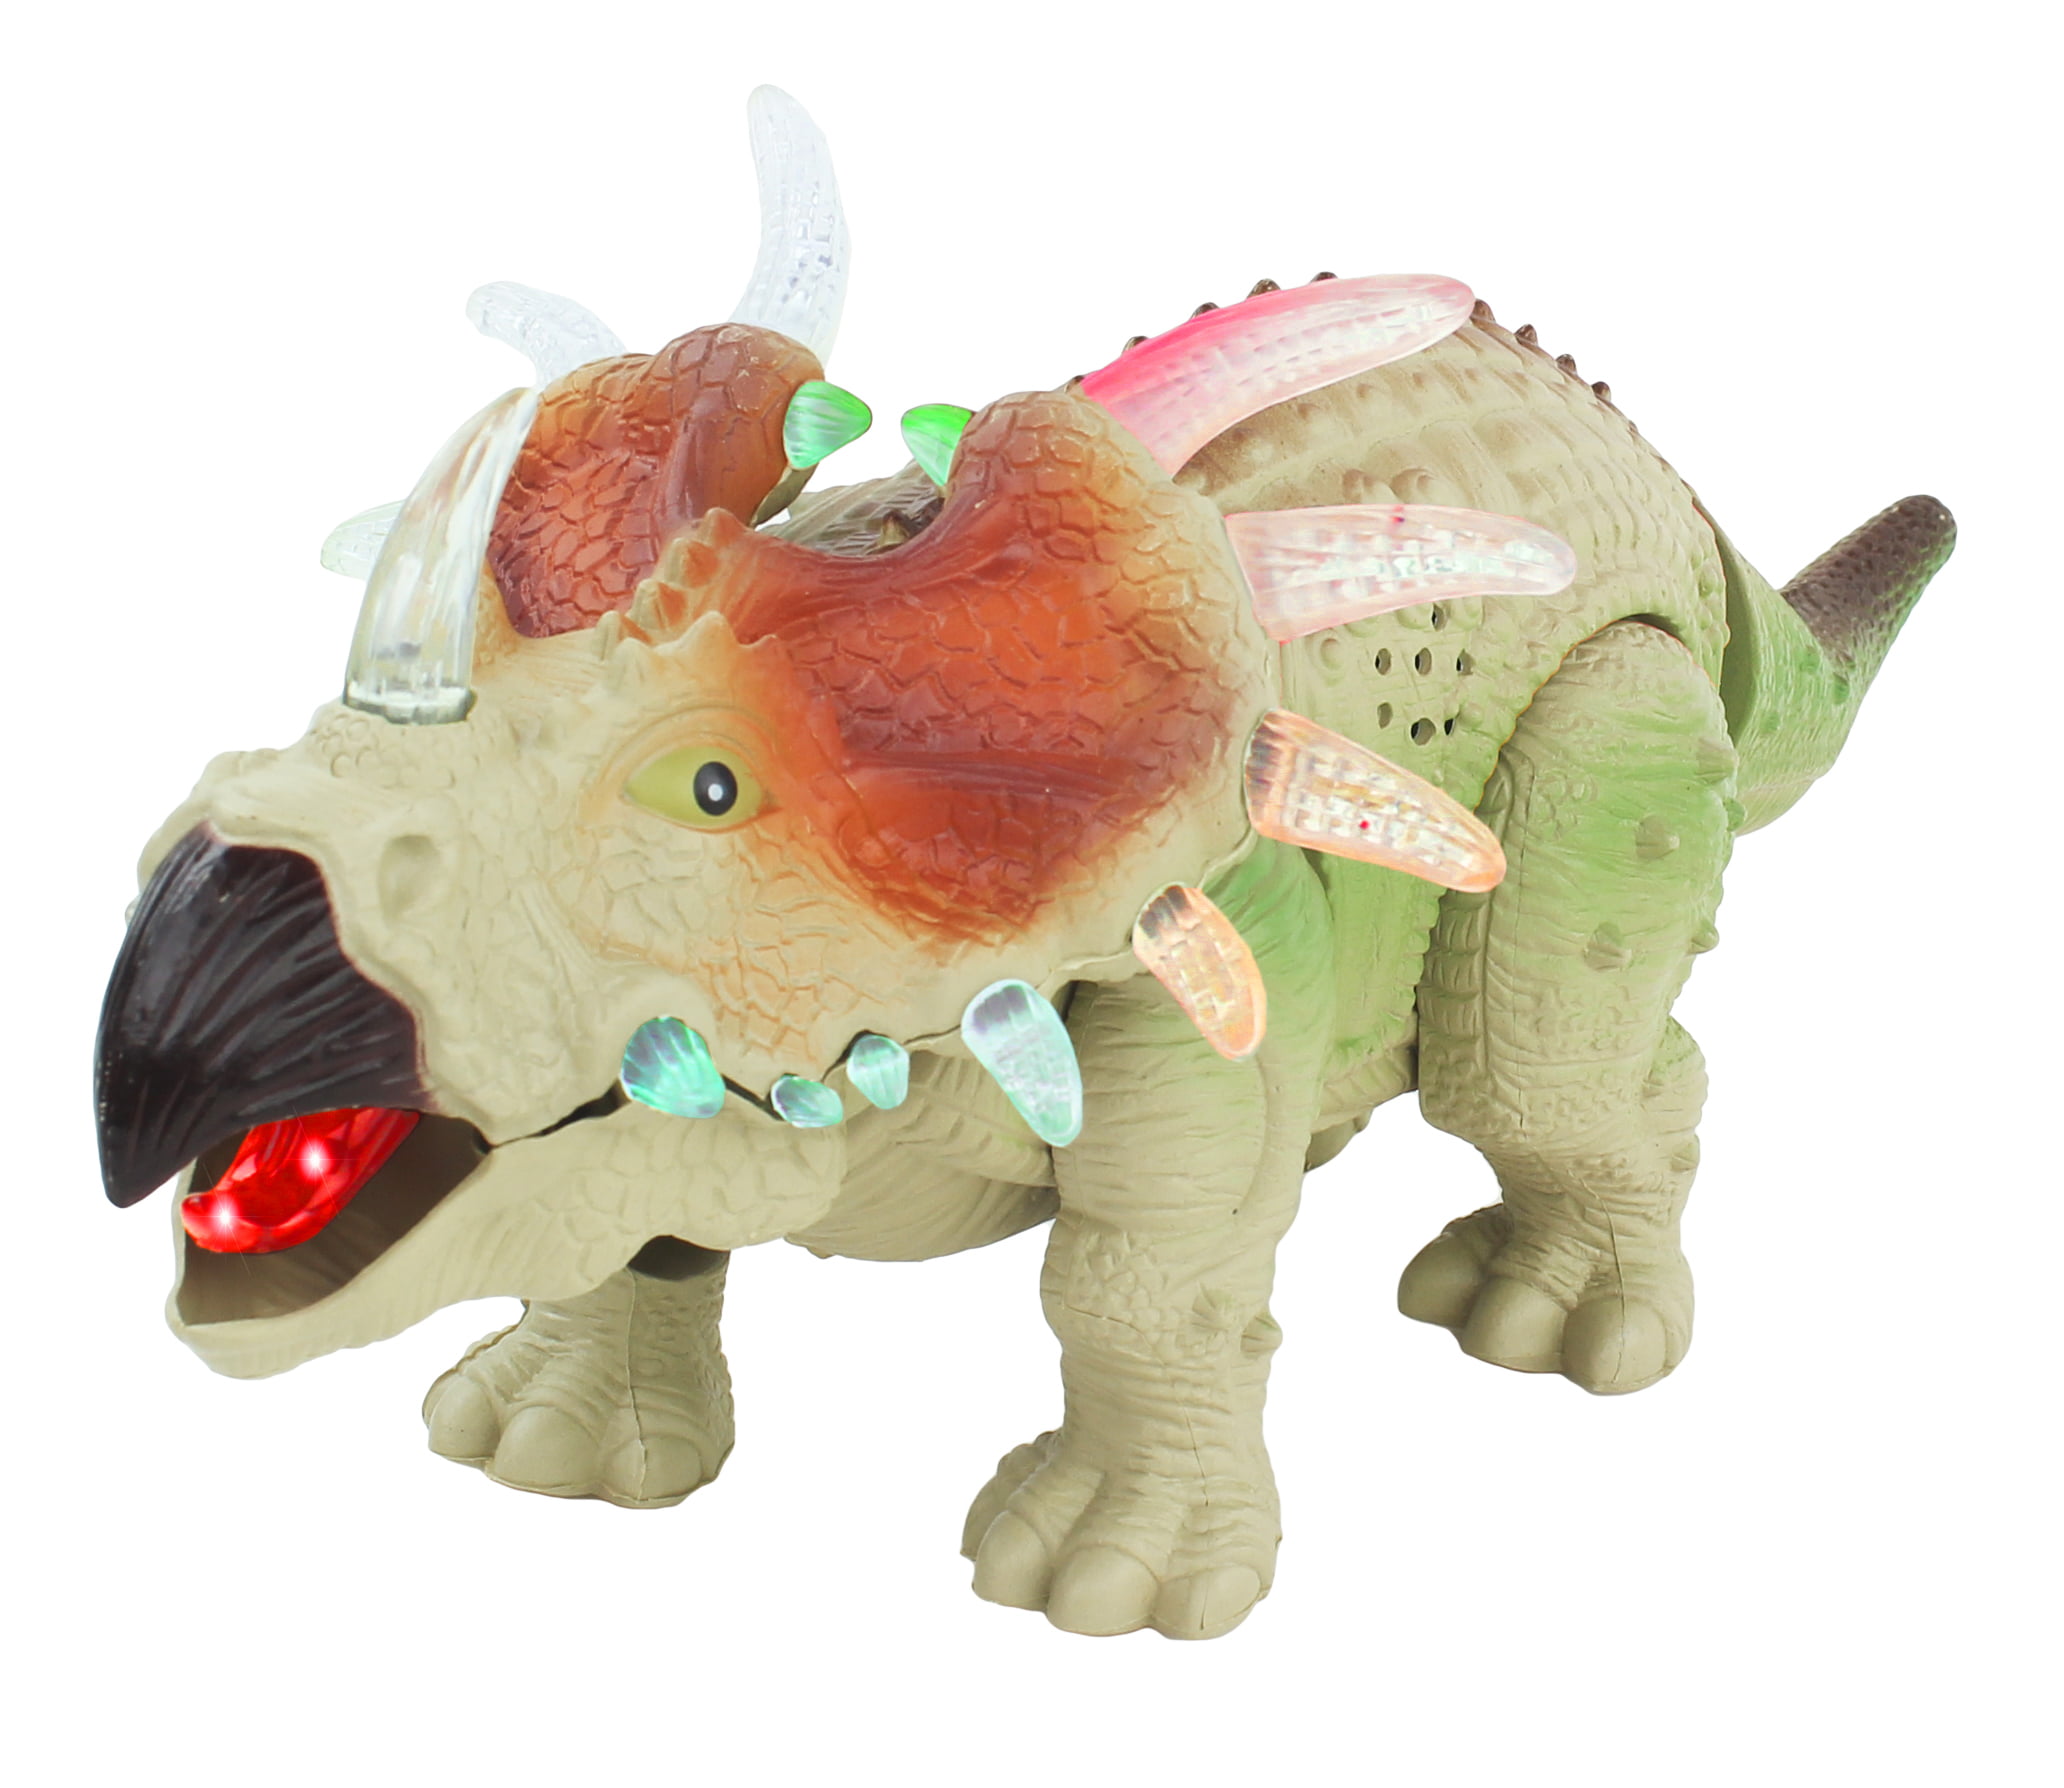 Lifelike Bobble Head Dinosaur Toy Creative Car Toy Ornaments for Dinosaur Lovers 